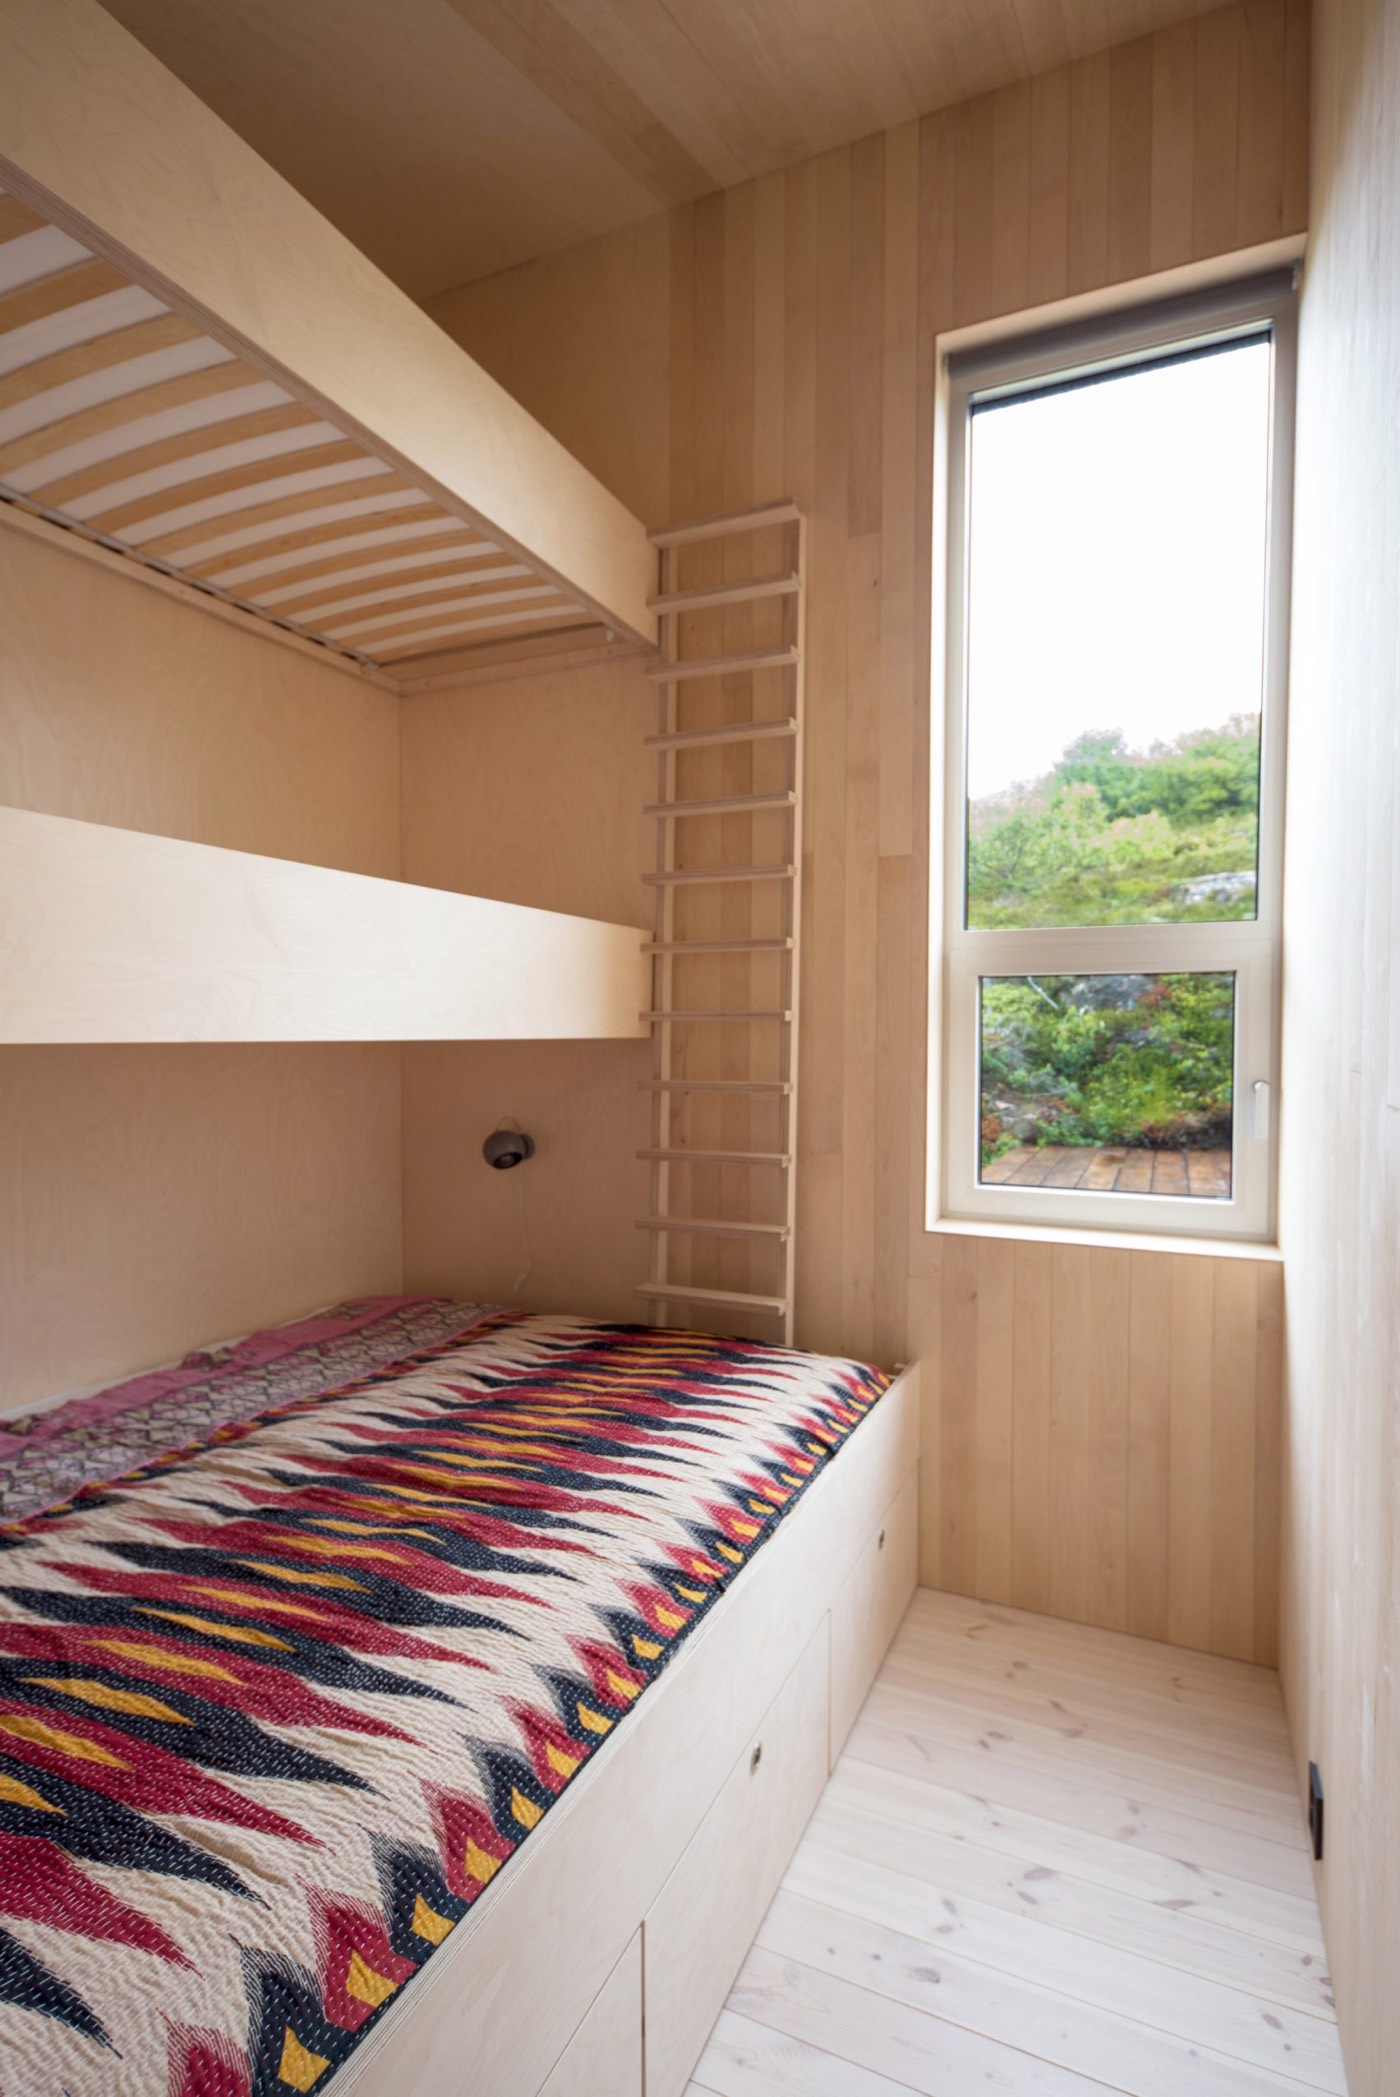 petite chambre lits superposés avec rangements revêtements bois bouleau